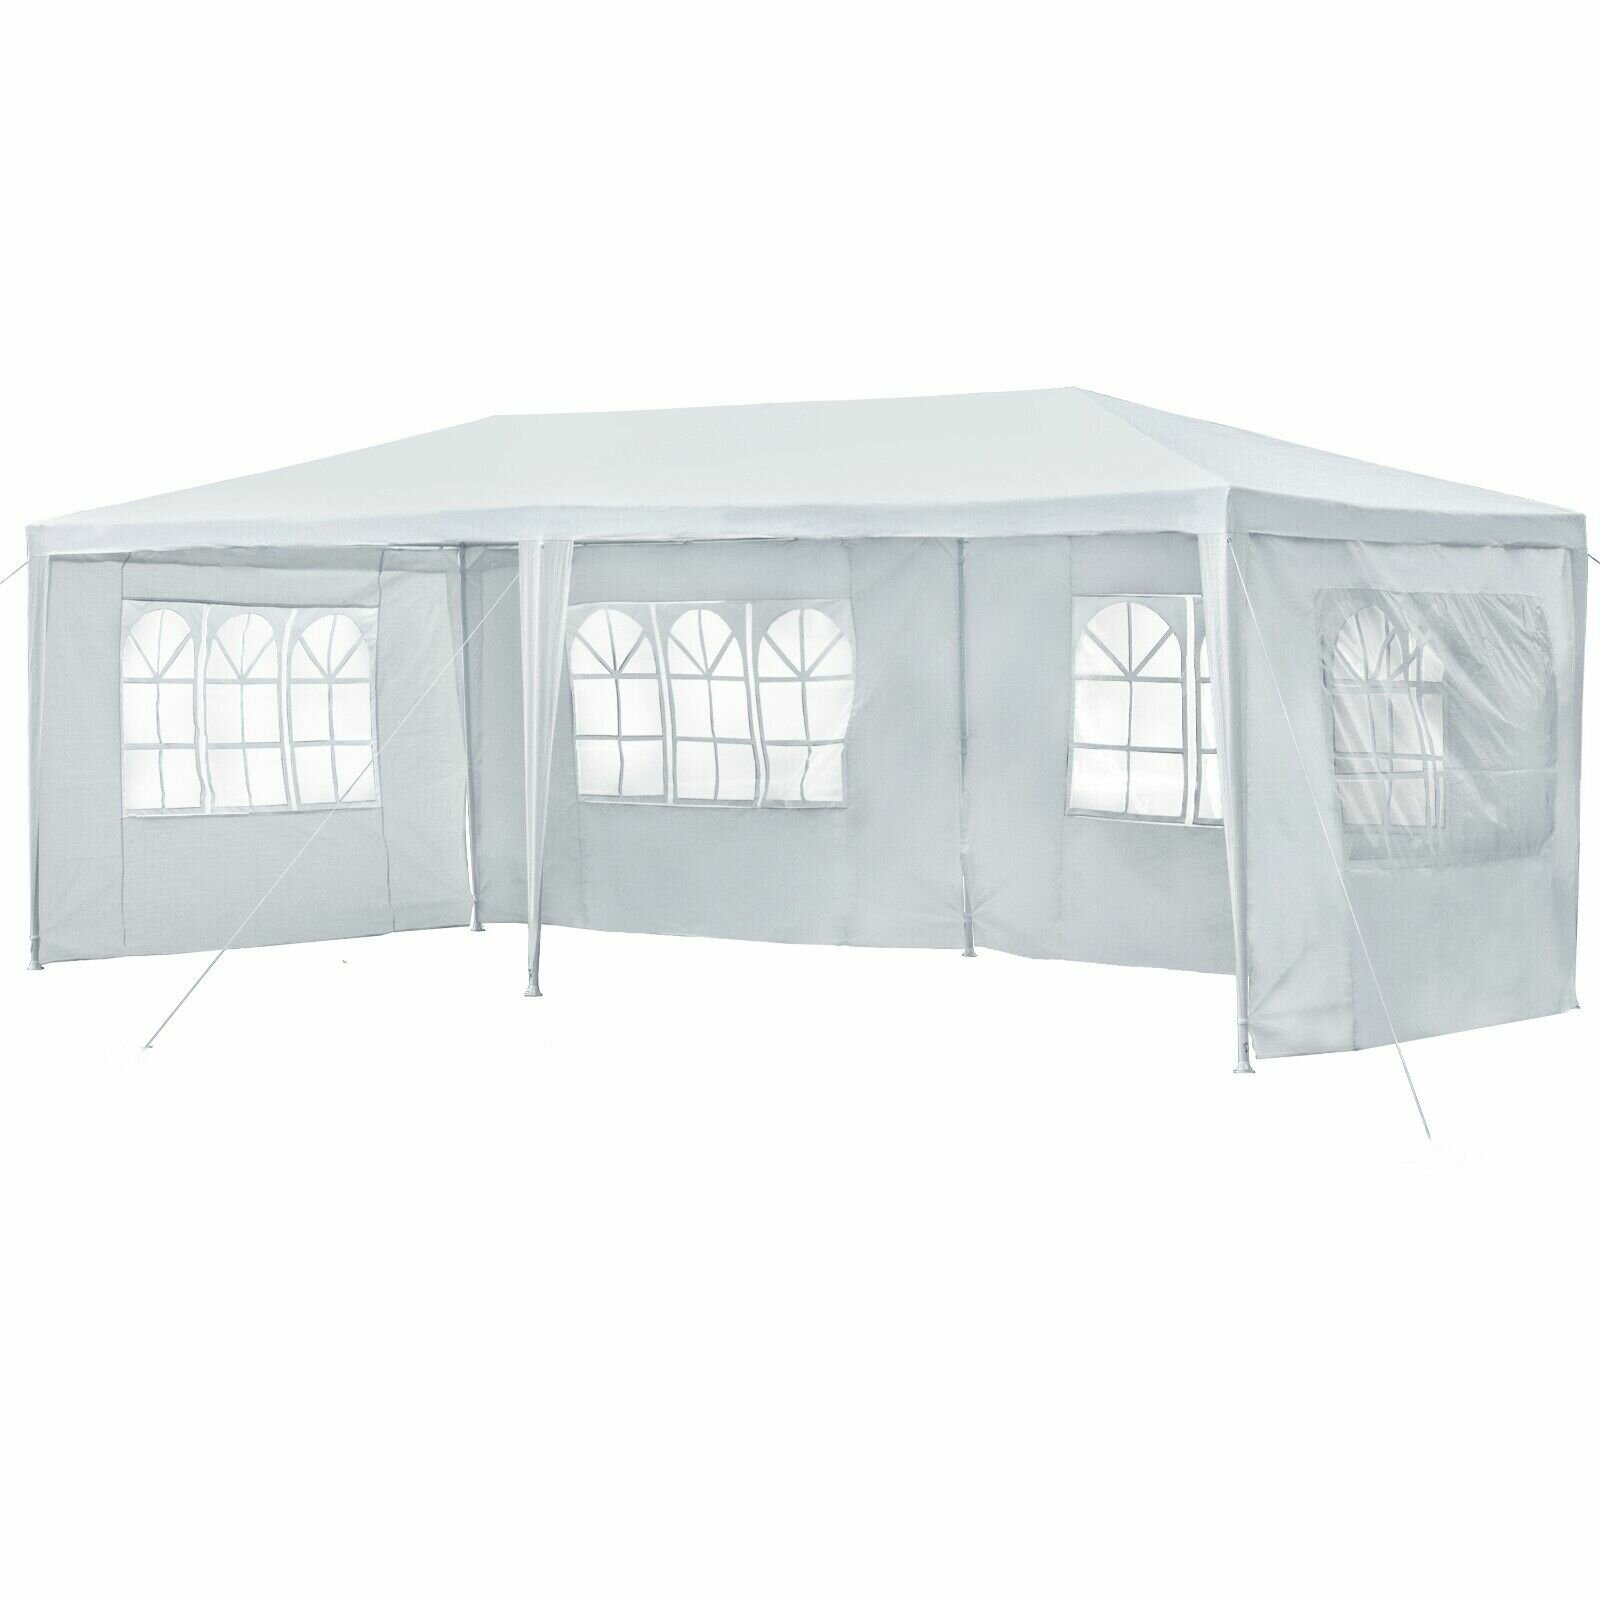 10x20 pés Canopy Side Wall 210D Impermeável Gazebo Shelter Shade Com Windows Outdoor Easy Party Tenda sem parte superior